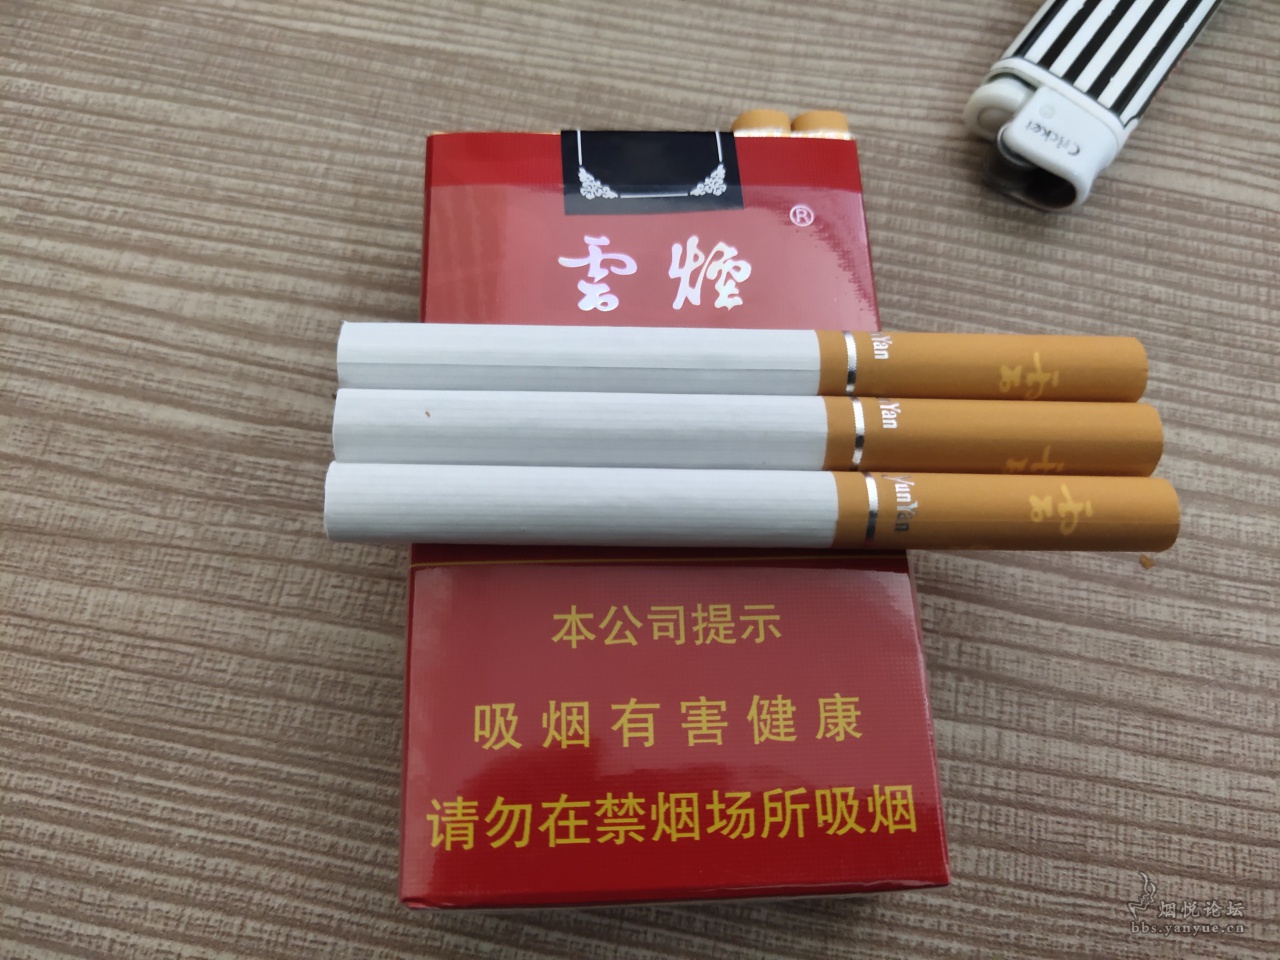 新款红牡丹中支 - 香烟品鉴 - 烟悦网论坛